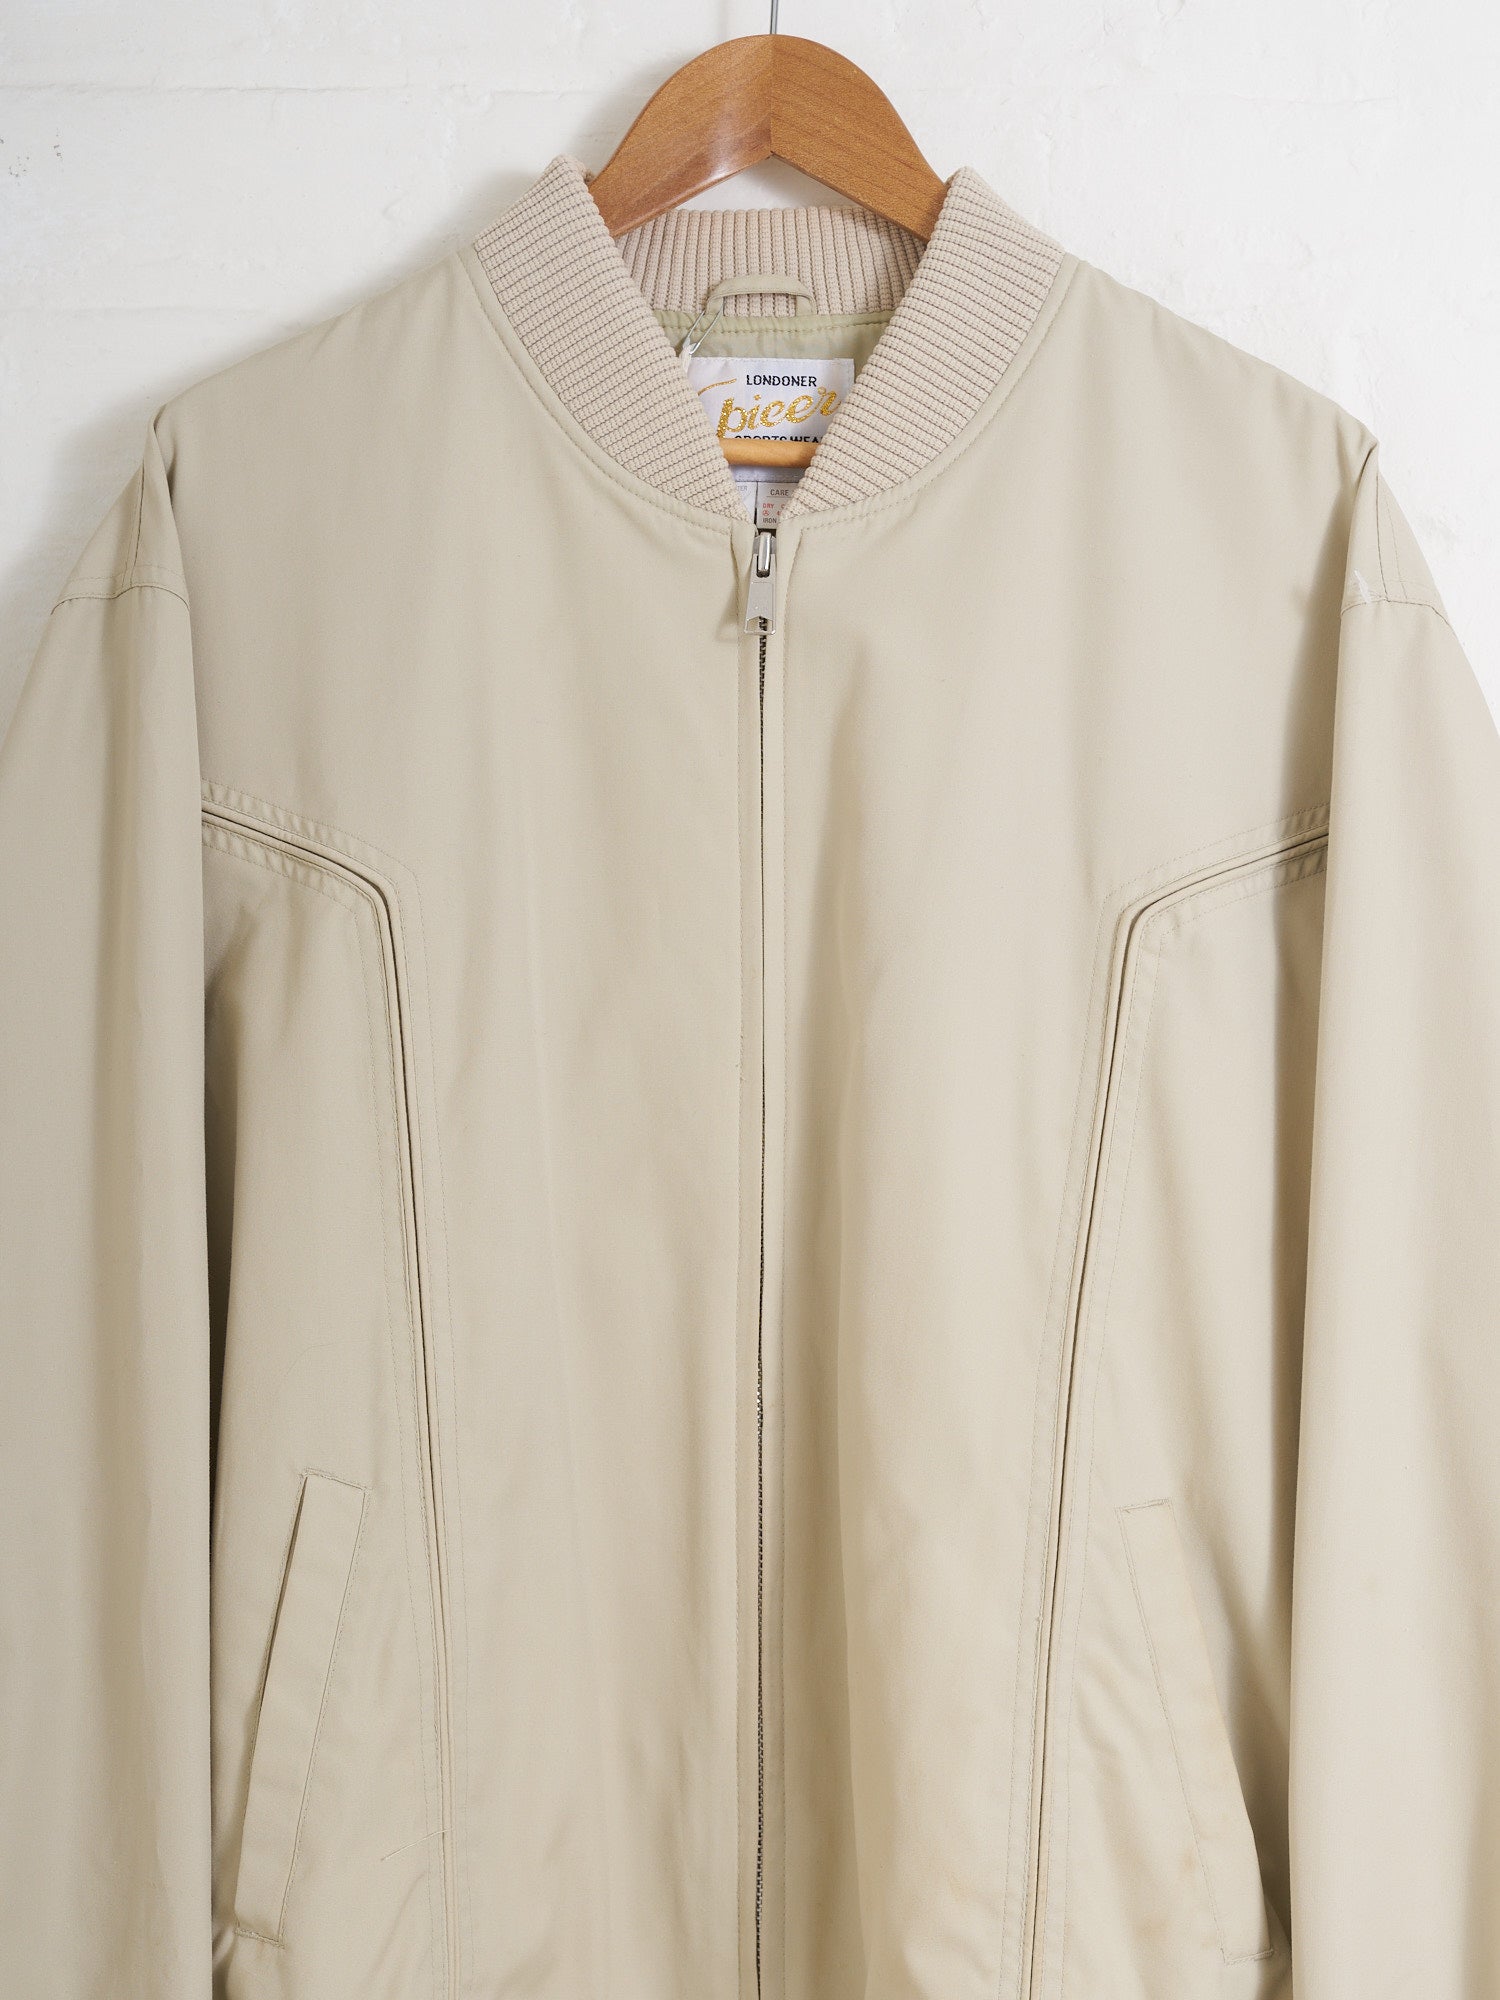 Vintage Spicer Sportswear of Melbourne 1980s beige panelled bomber jacket M L XL